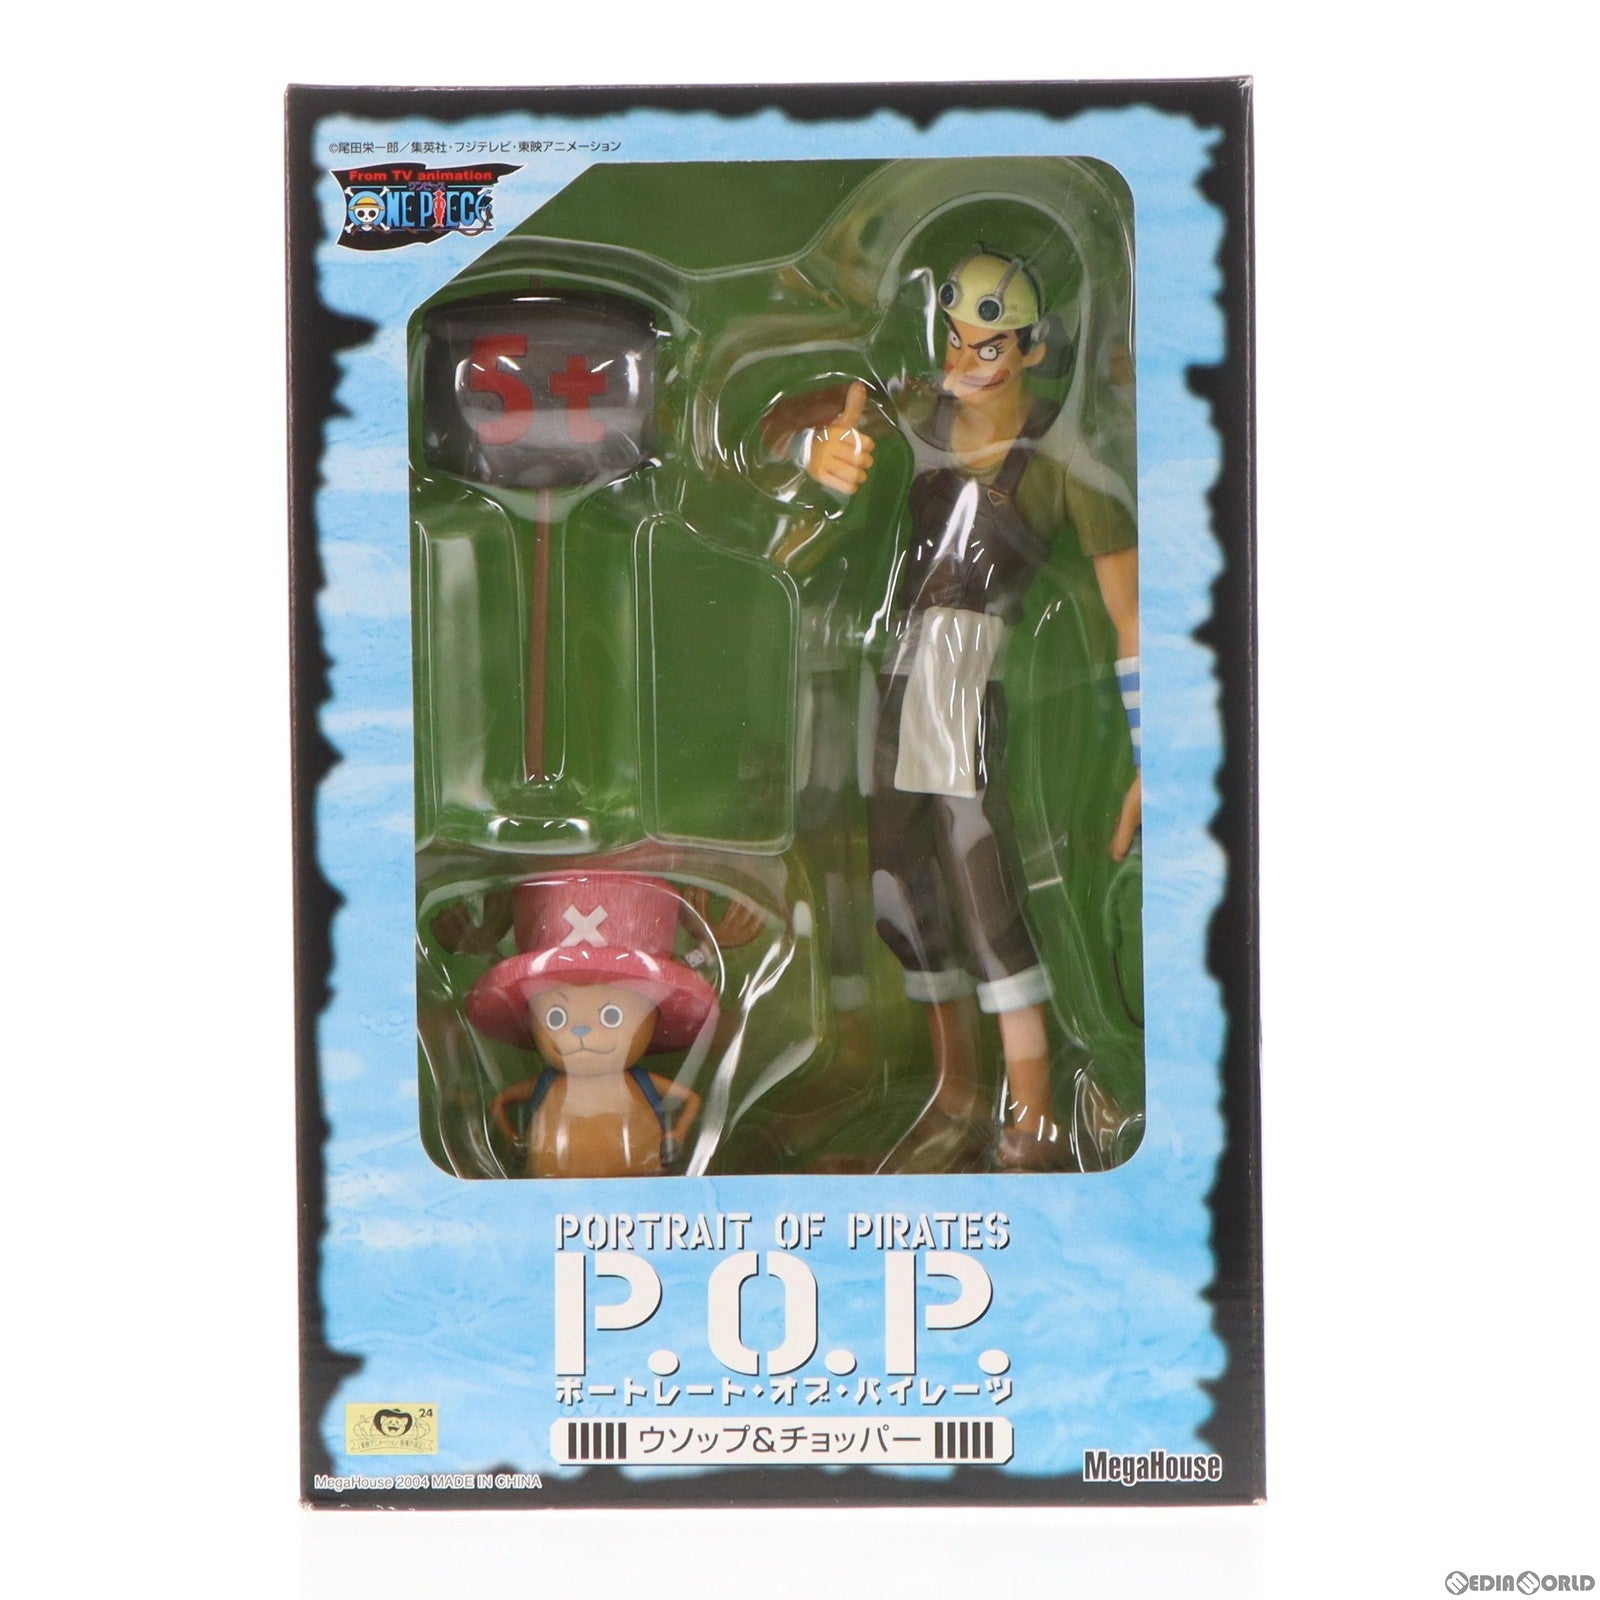 【中古即納】[FIG]エクセレントモデル Portrait.Of.Pirates P.O.P ウソップ&チョッパー ONE PIECE(ワンピース) 1/8 完成品 フィギュア メガハウス(20041031)